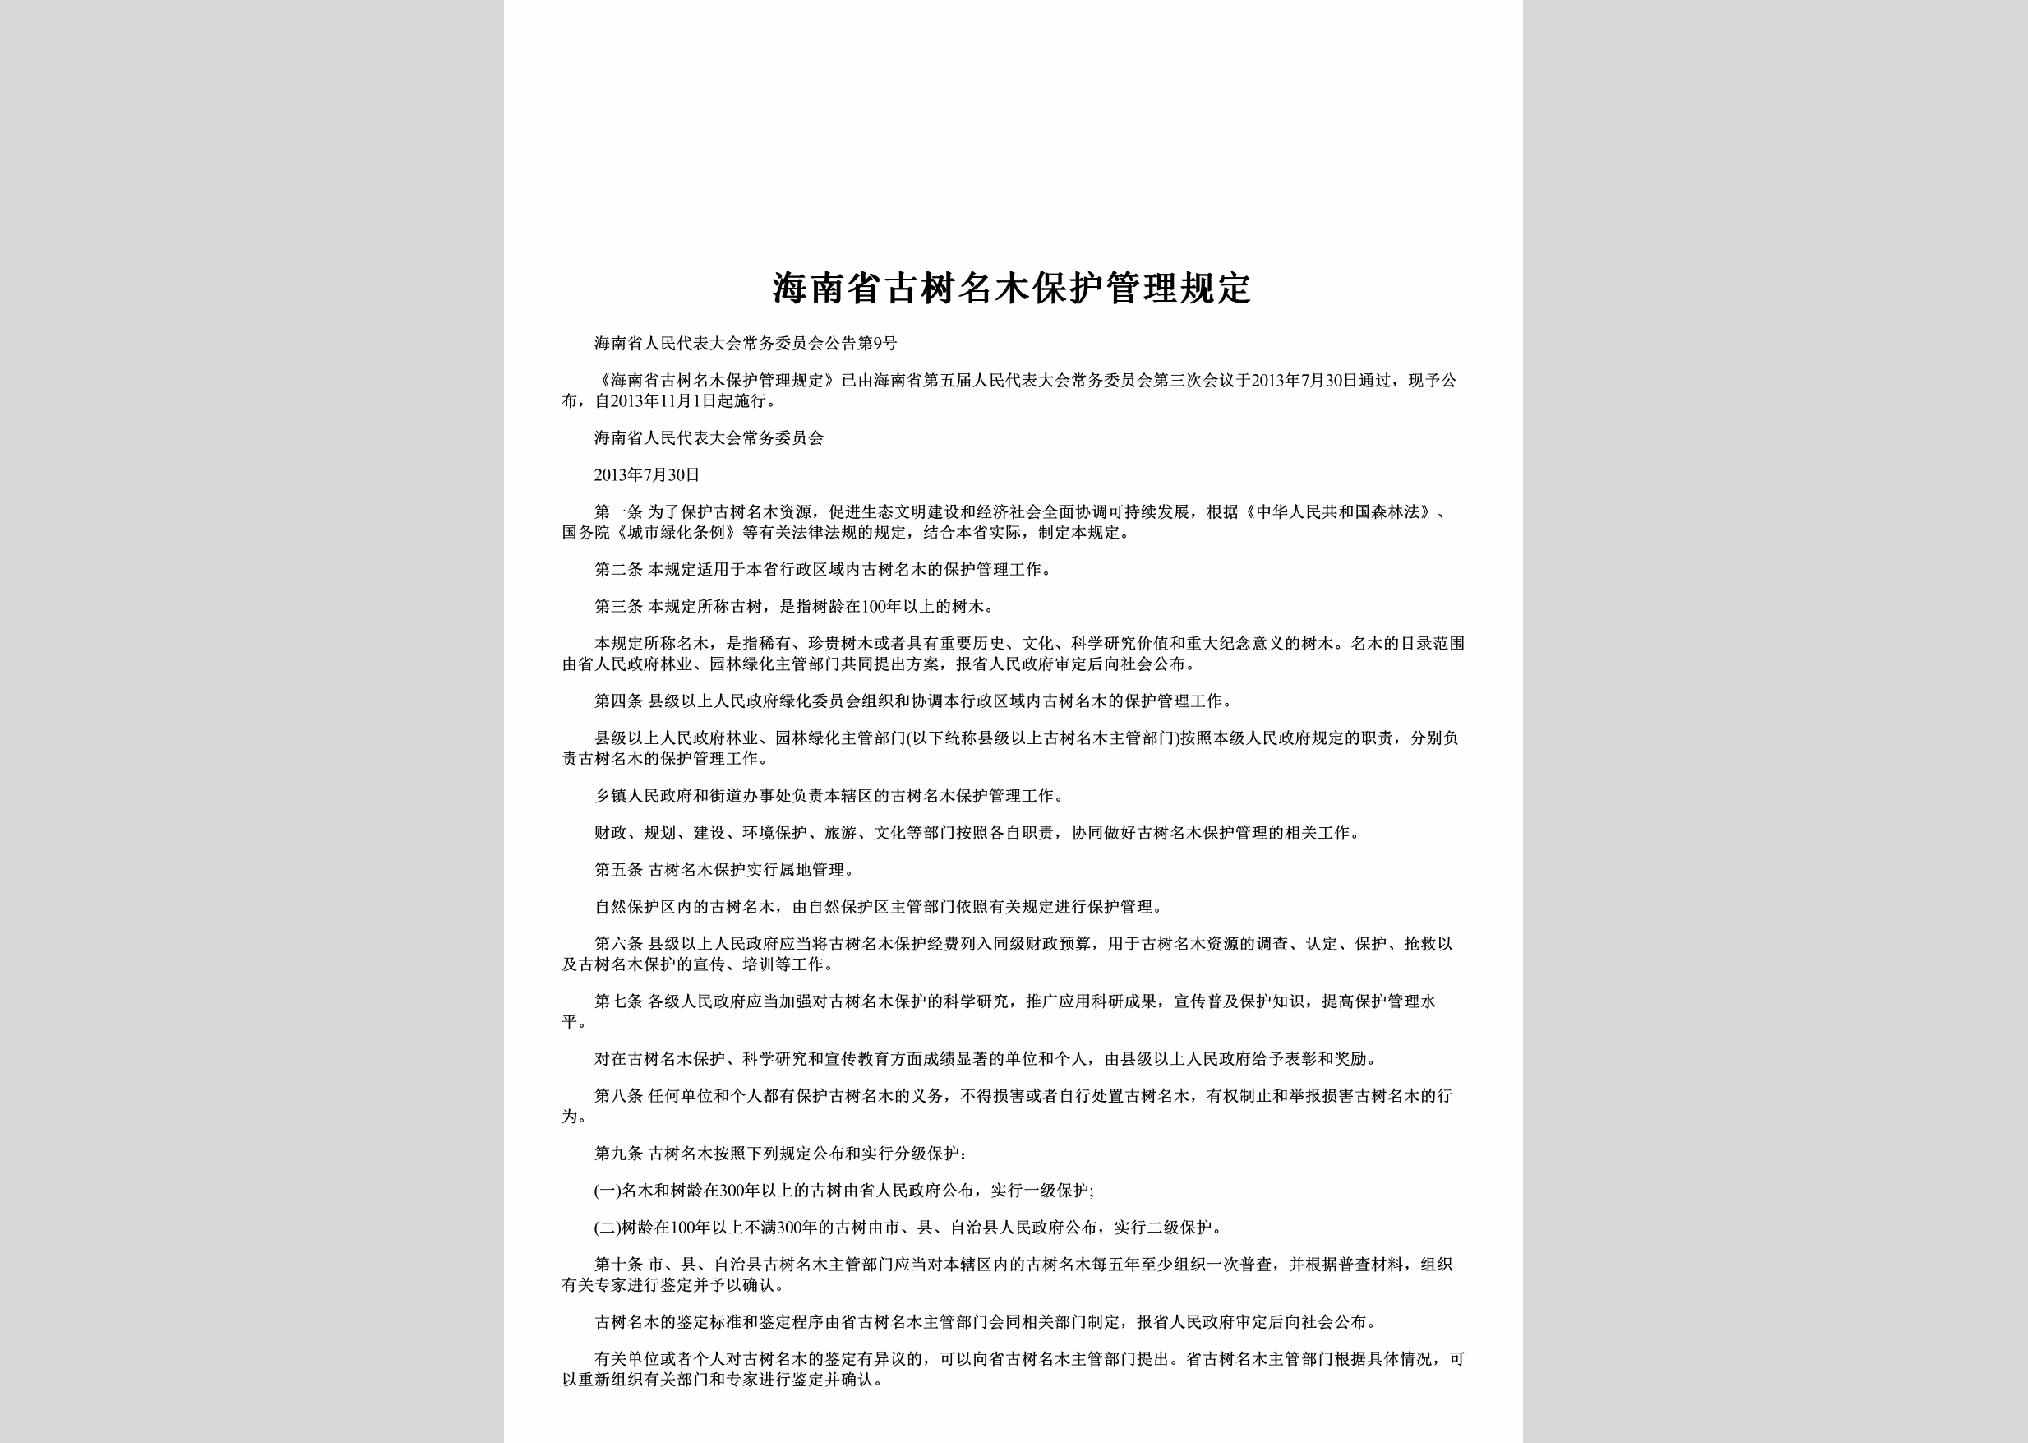 海南省人民代表大会常务委员会公告第9号：海南省古树名木保护管理规定